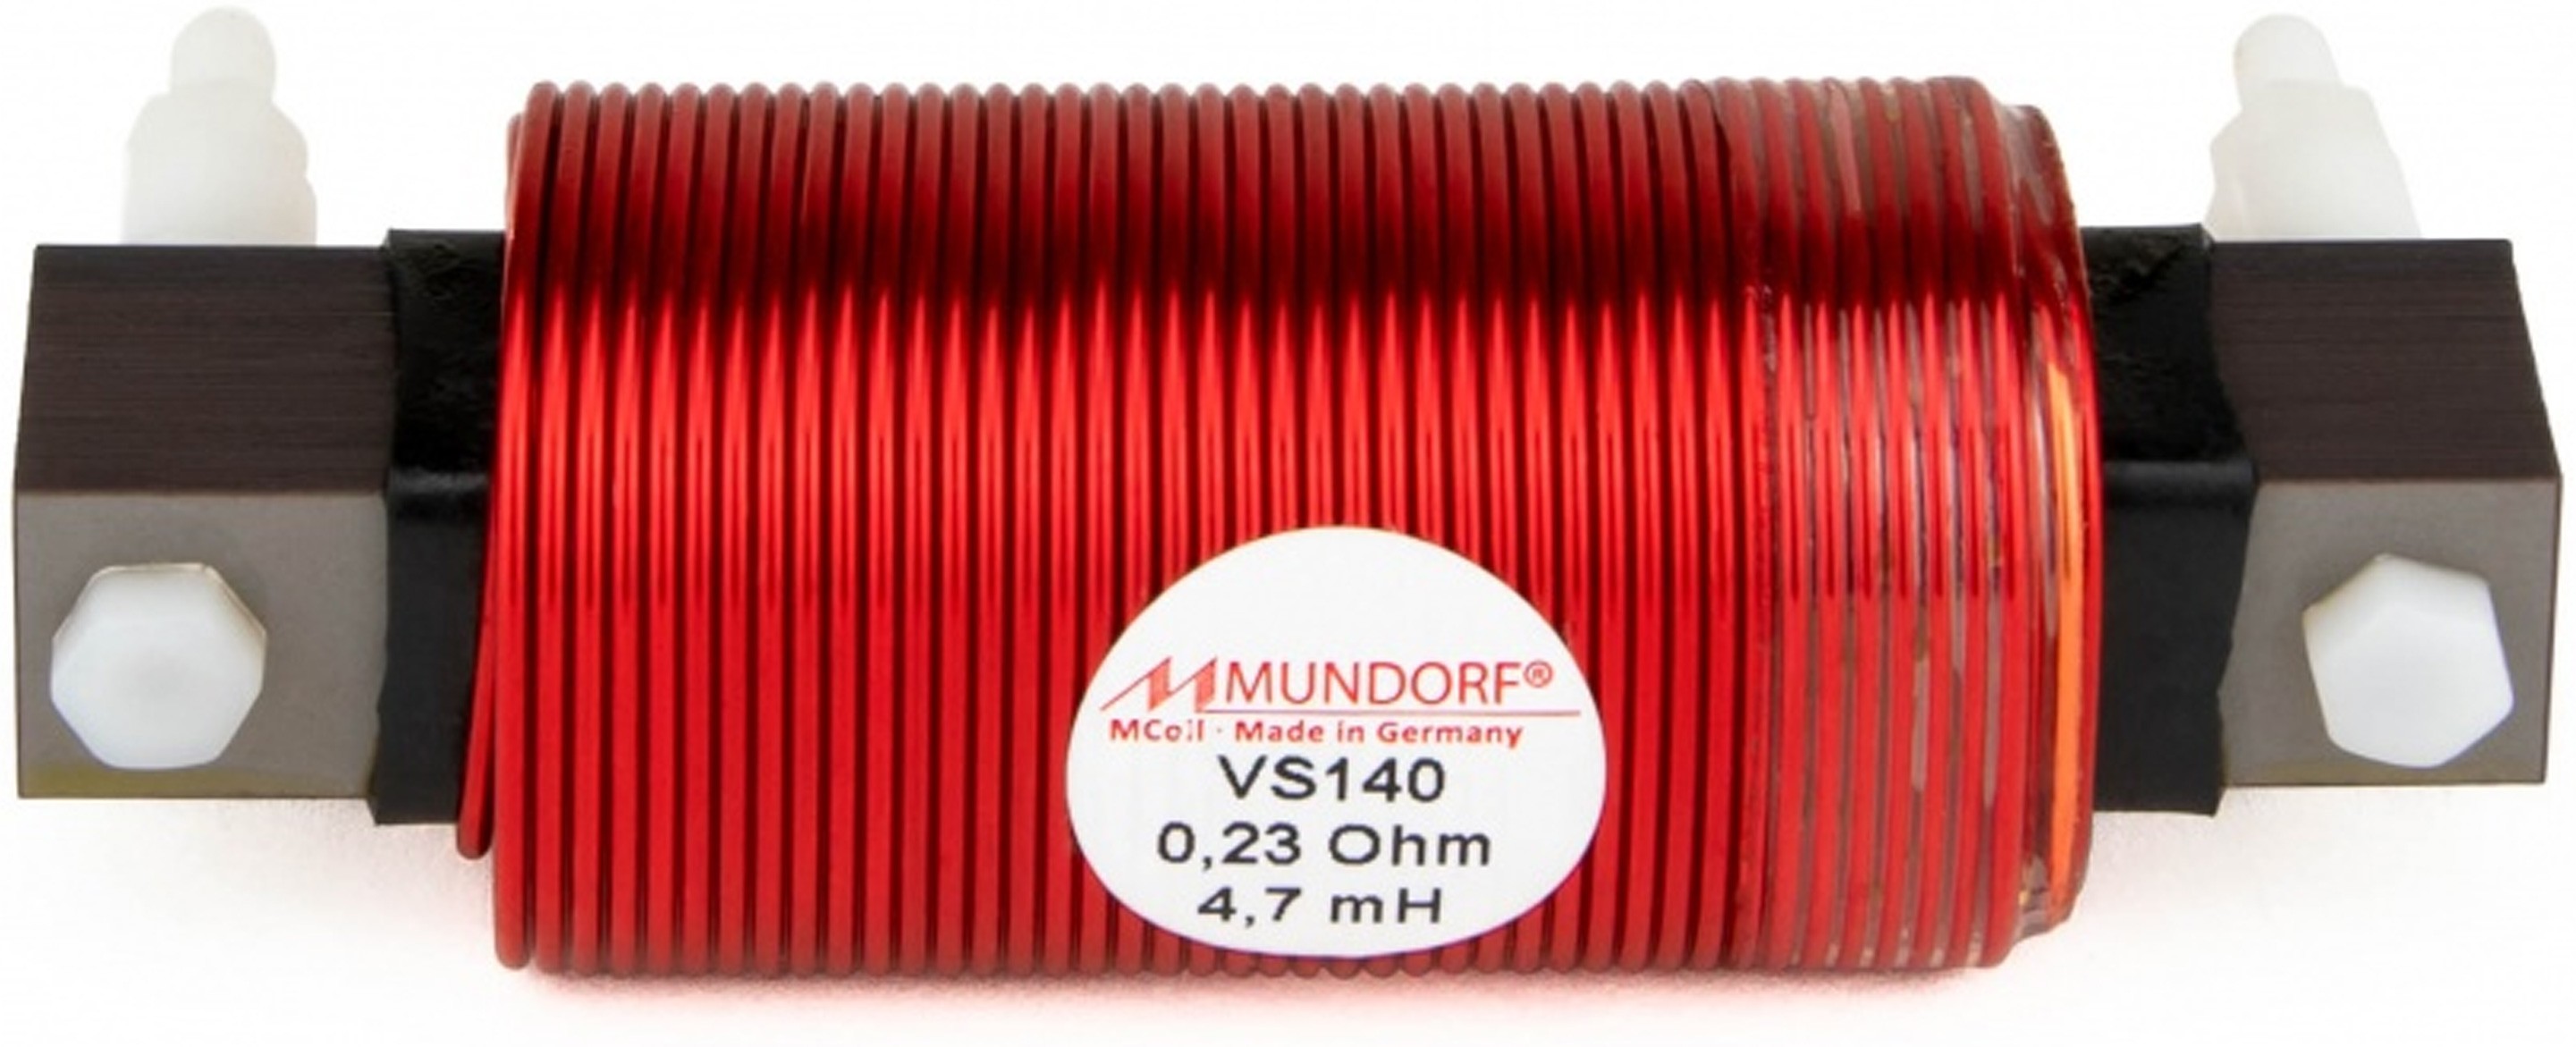 MUNDORF VS140-6.8 MCOIL ICORE Copper Coil Feron Core 6.8mH